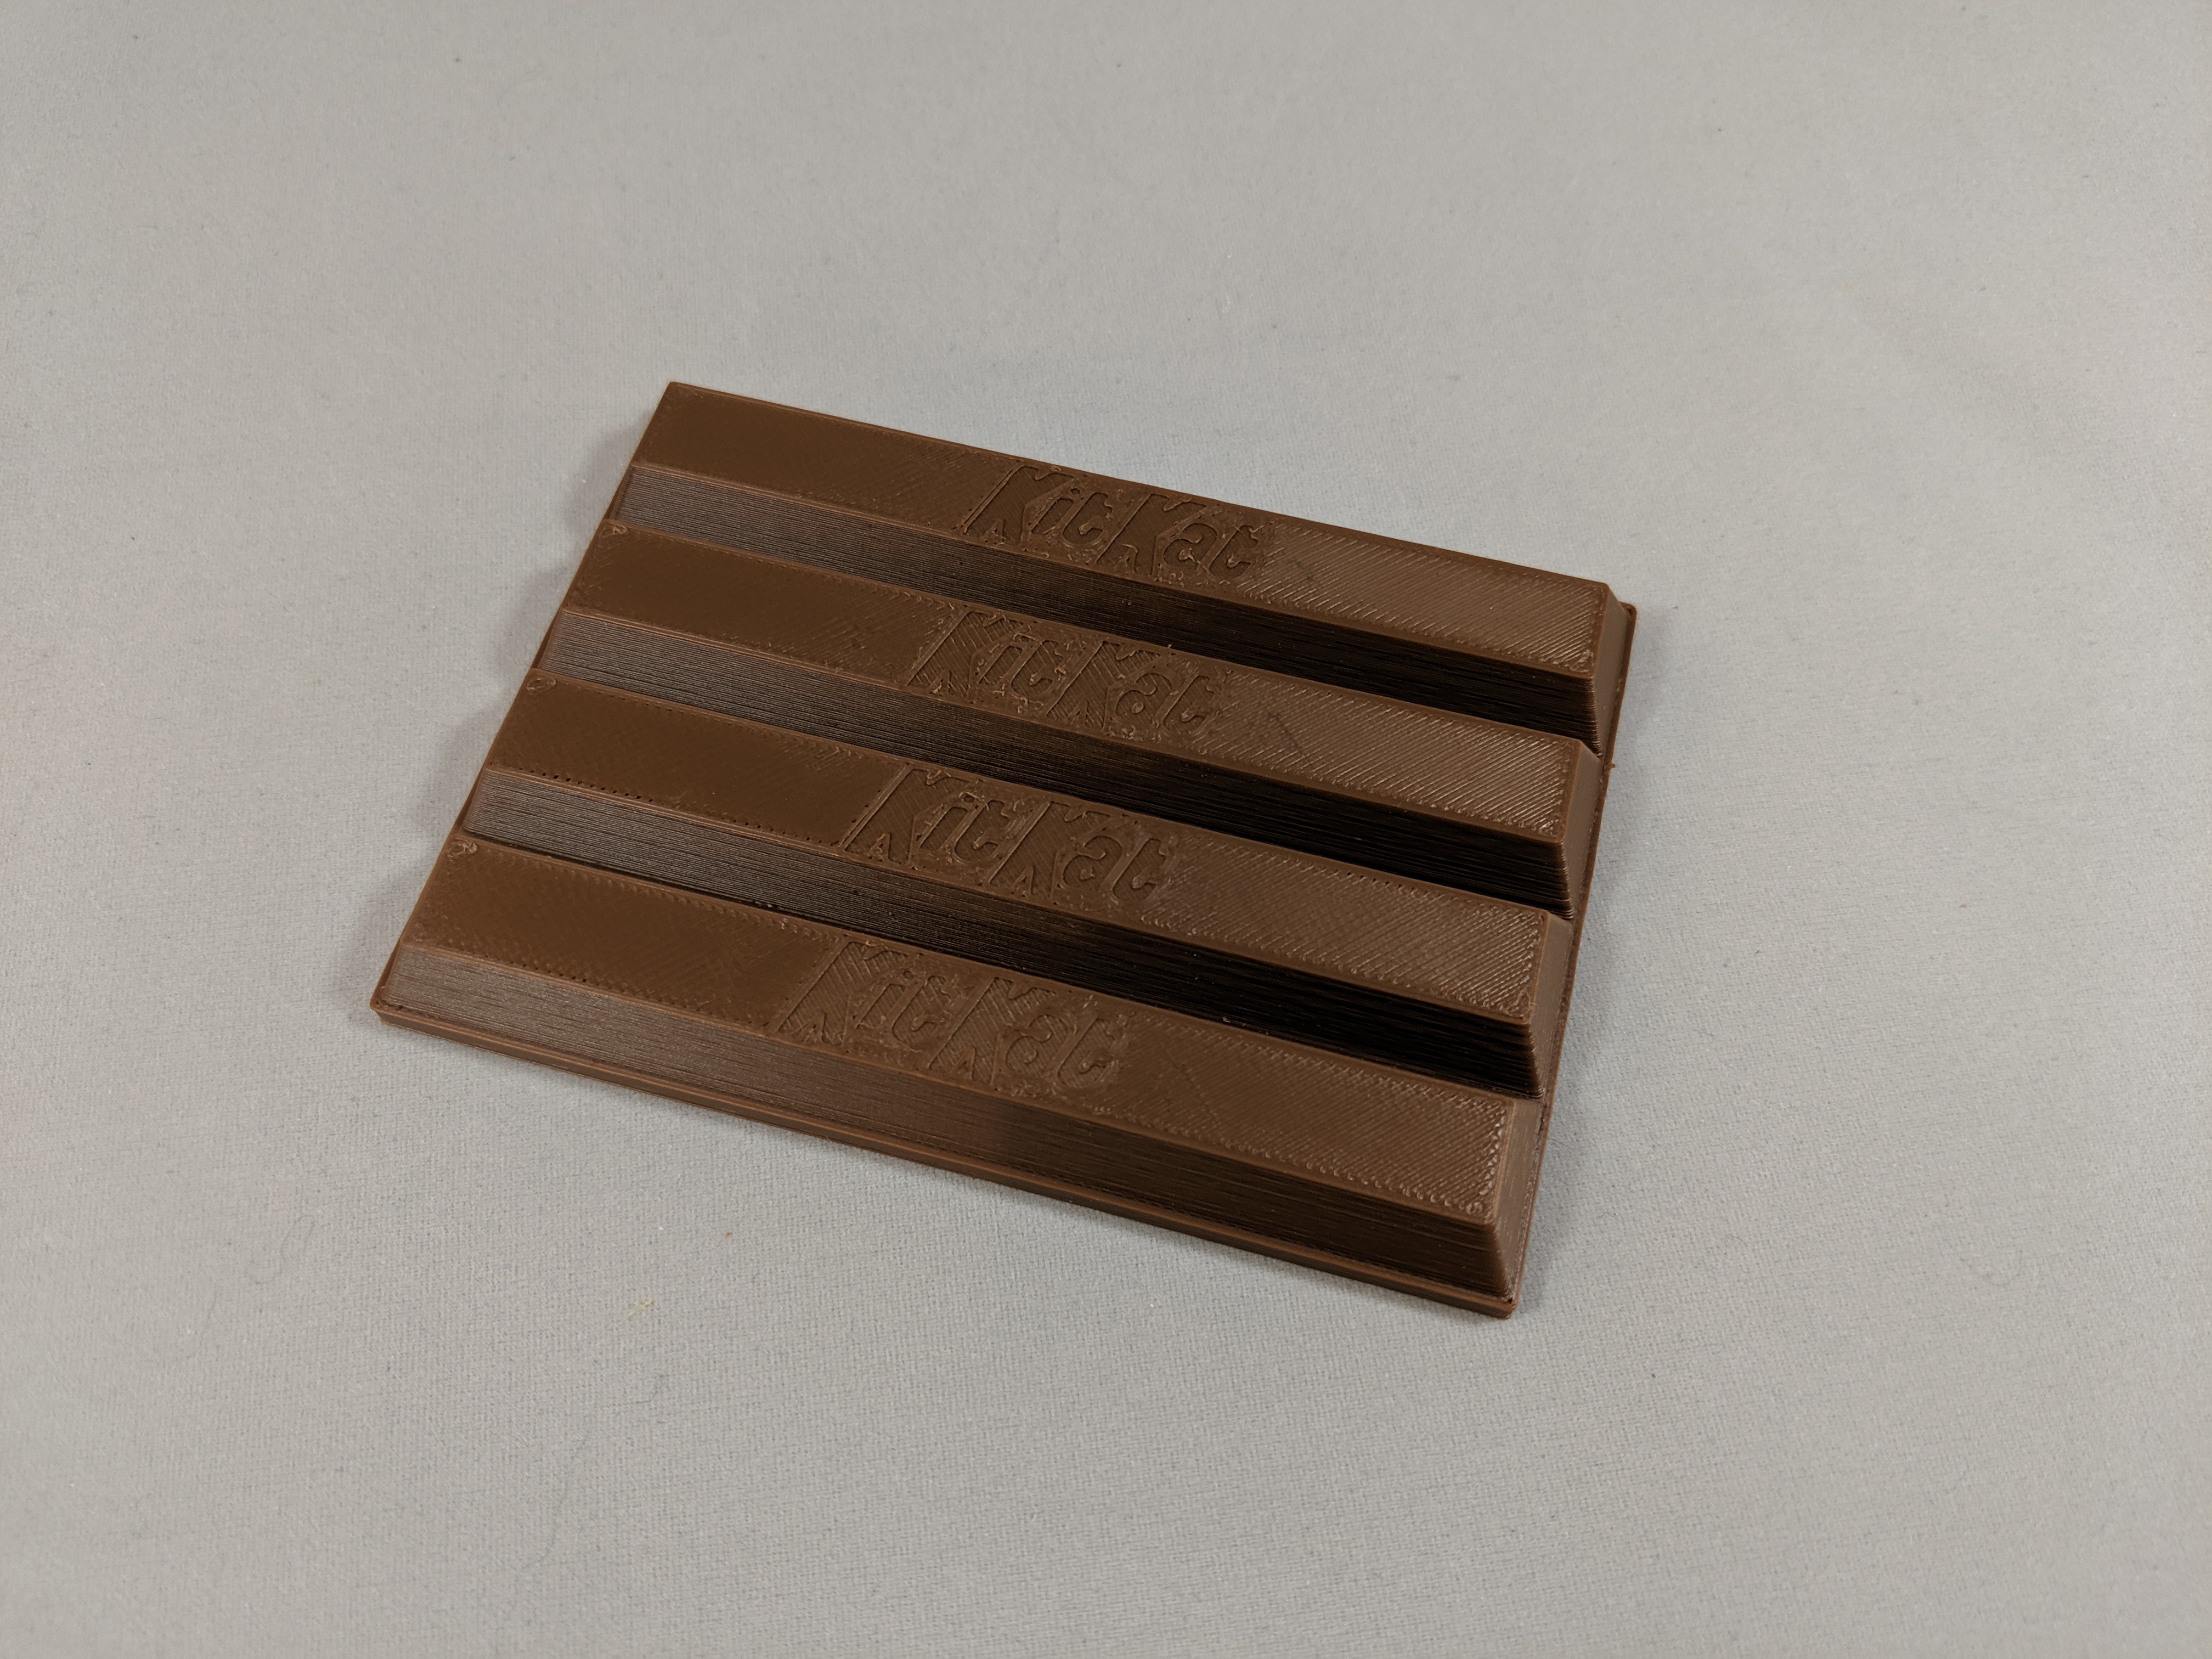 Kit-Kat chocolate bar